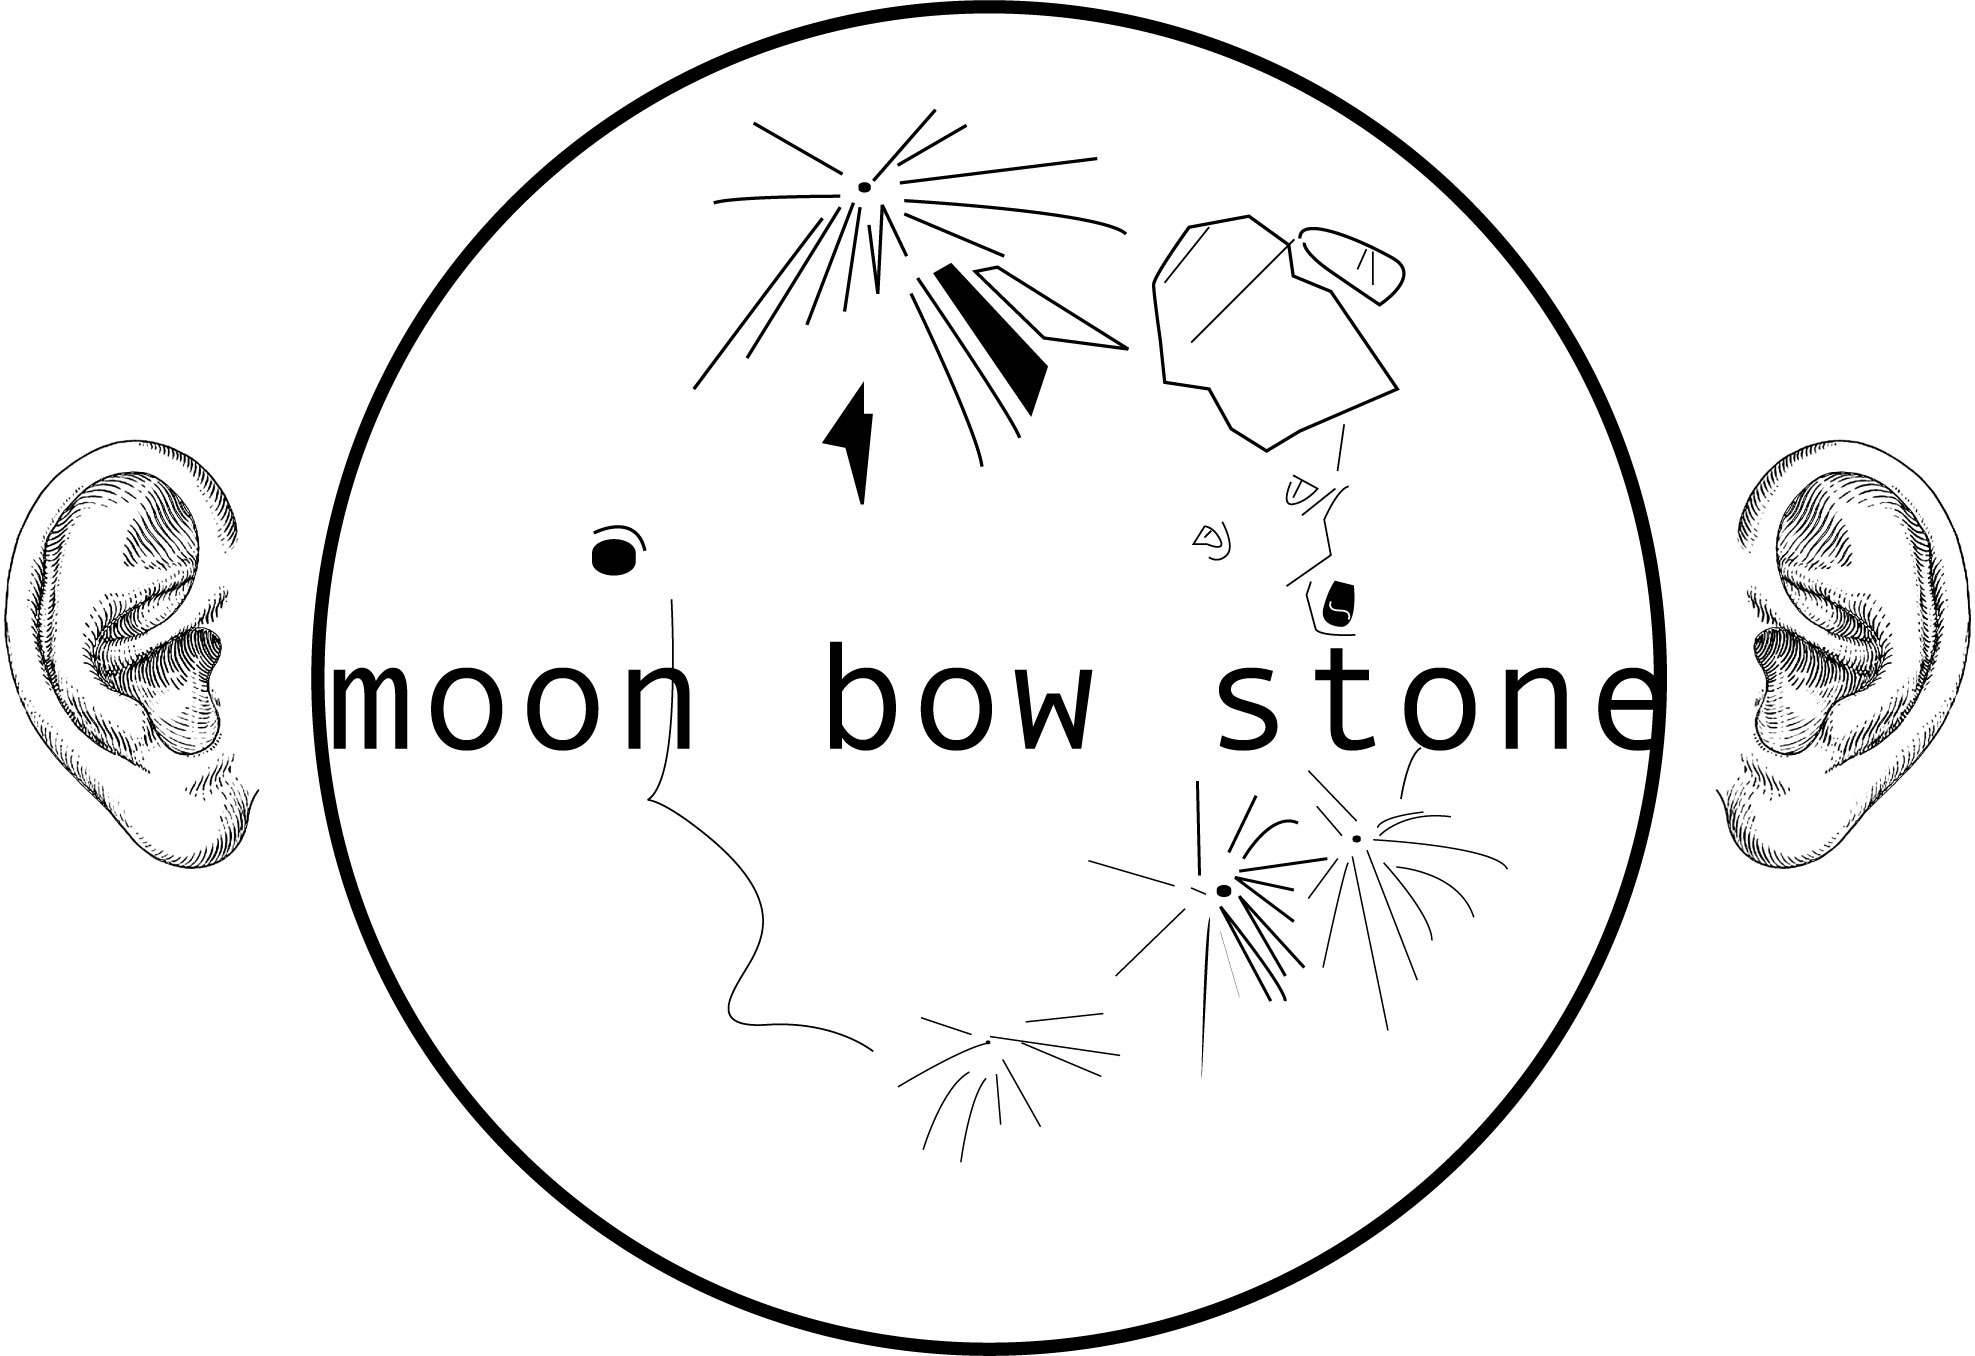 moon bow stone